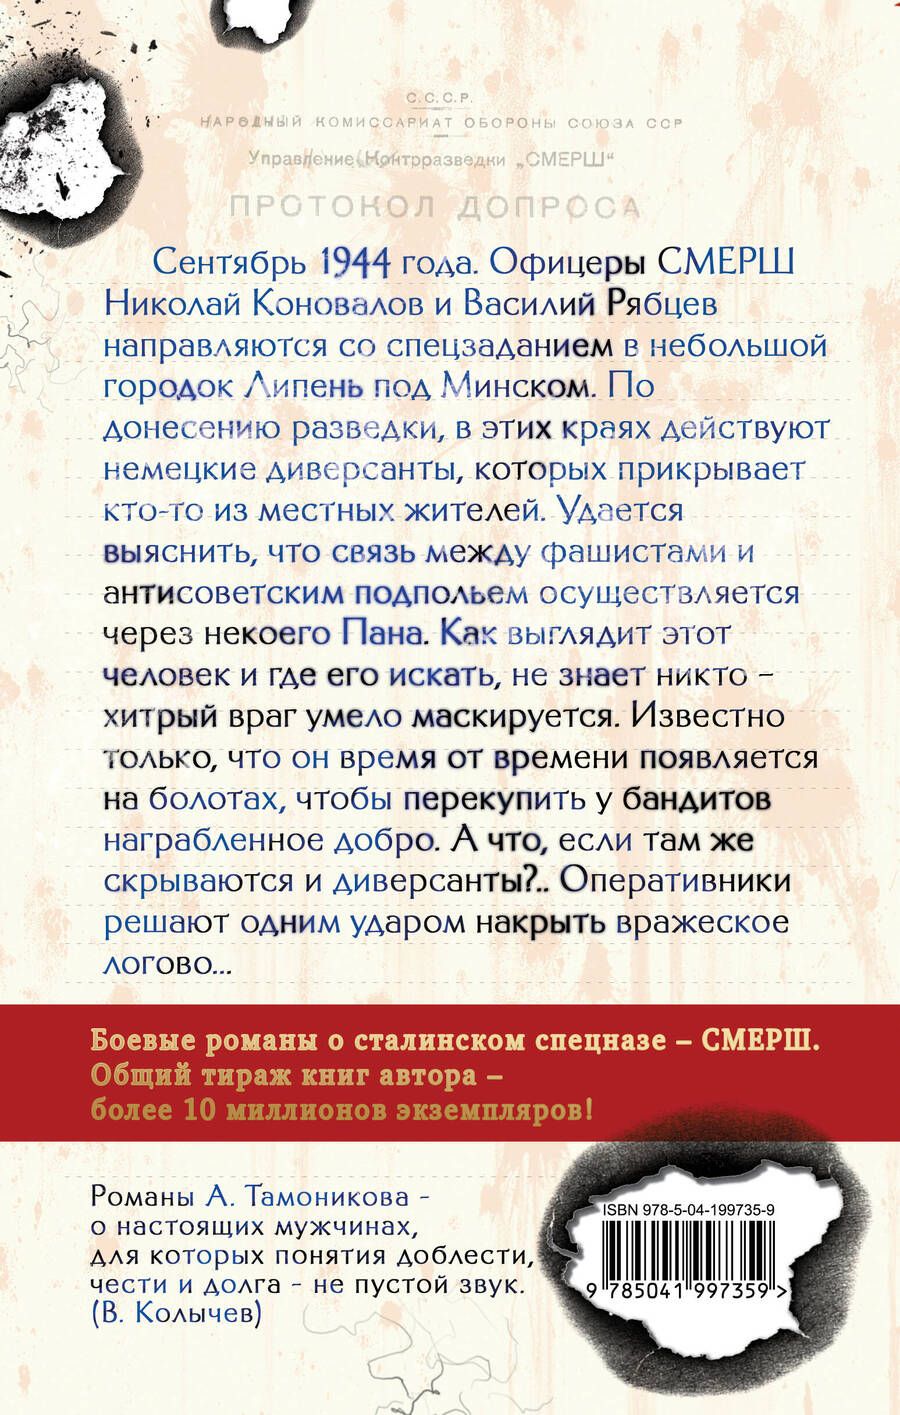 Обложка книги "Александр Тамоников: Тени забытых болот"